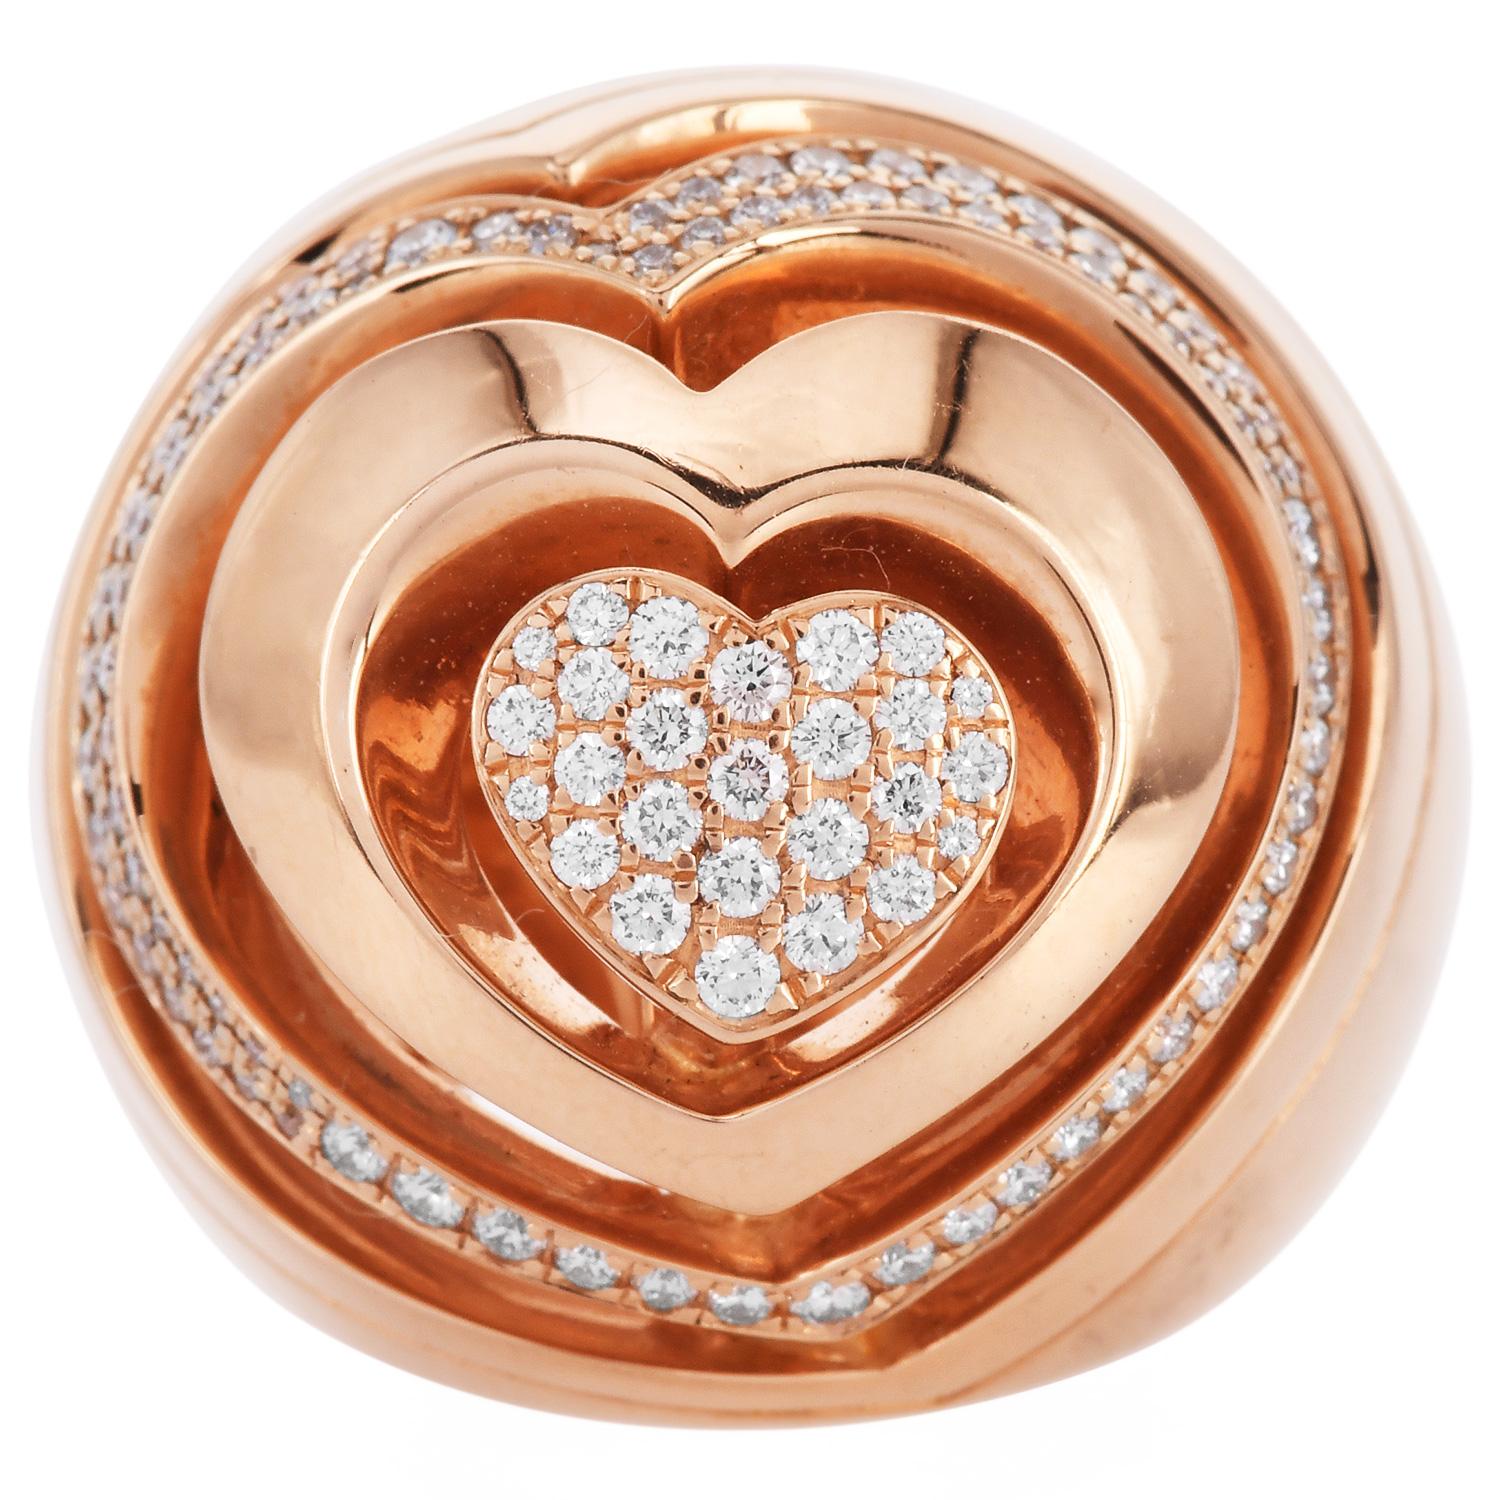 Estate Diamond Gold 18K Abstract Heart Dome Cocktail Ring forgé en or rose 18K avec illustration de cœur abstrait dôme statement ring with natural Pave diamonds.

Les diamants sont d'environ 1,30 carats, de couleur E-F et de pureté VS1-VS2.

Marqué